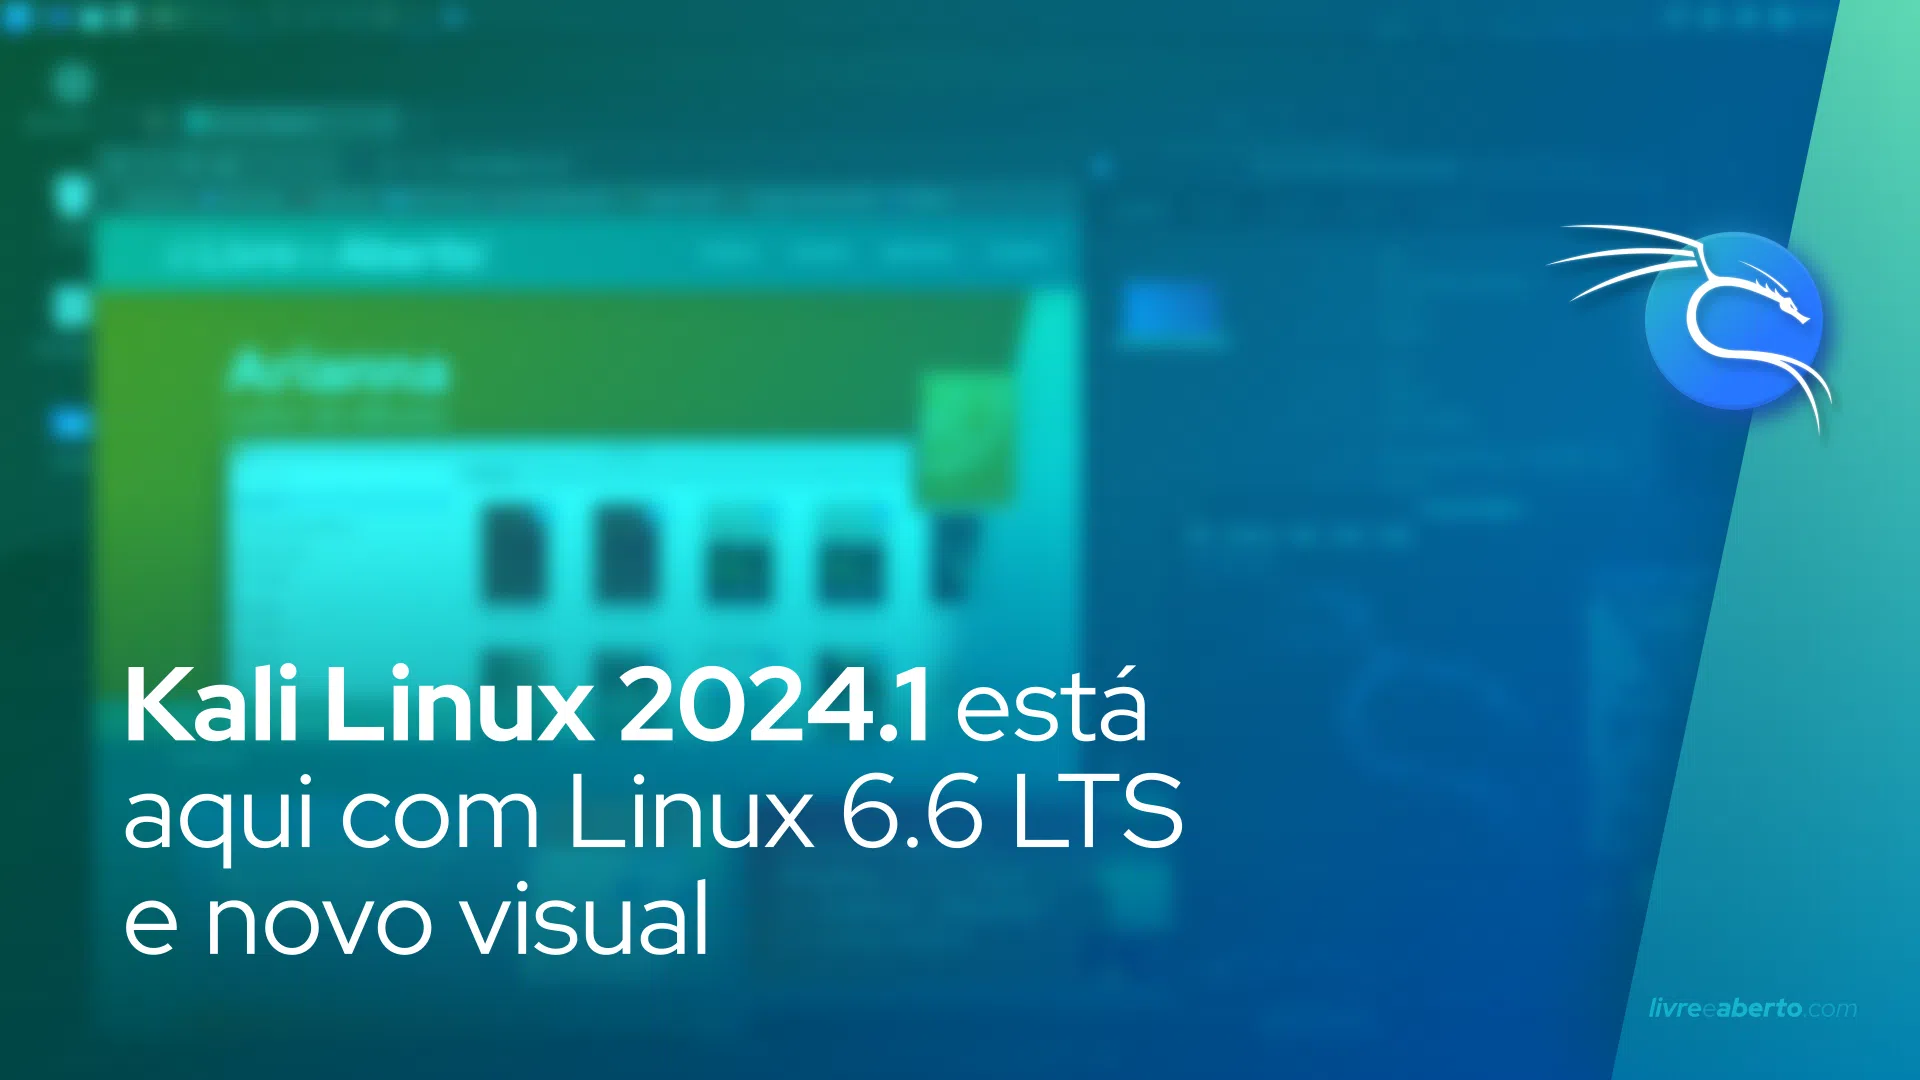 Kali Linux 2024.1 está aqui com Linux 6.6 LTS e novo visual